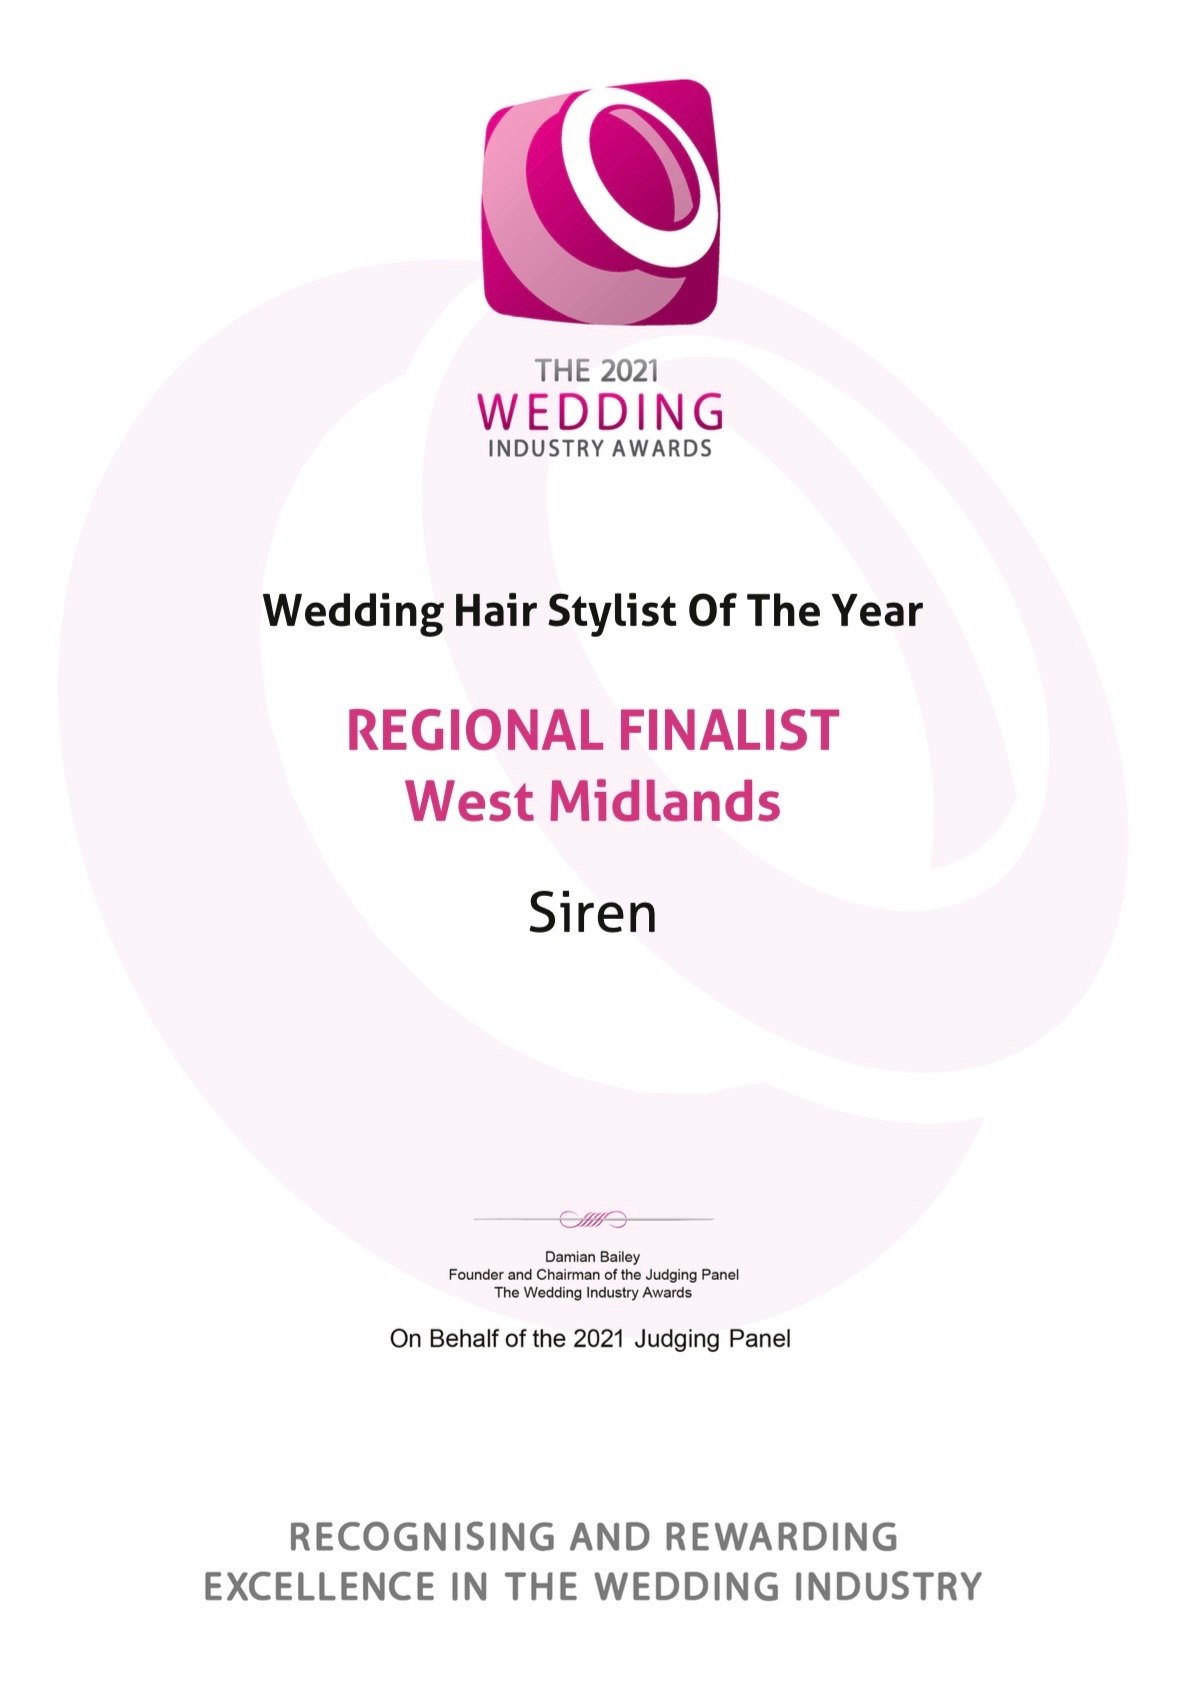 Regional finalist for the prestigious TWIA wedding hair stylist of the year